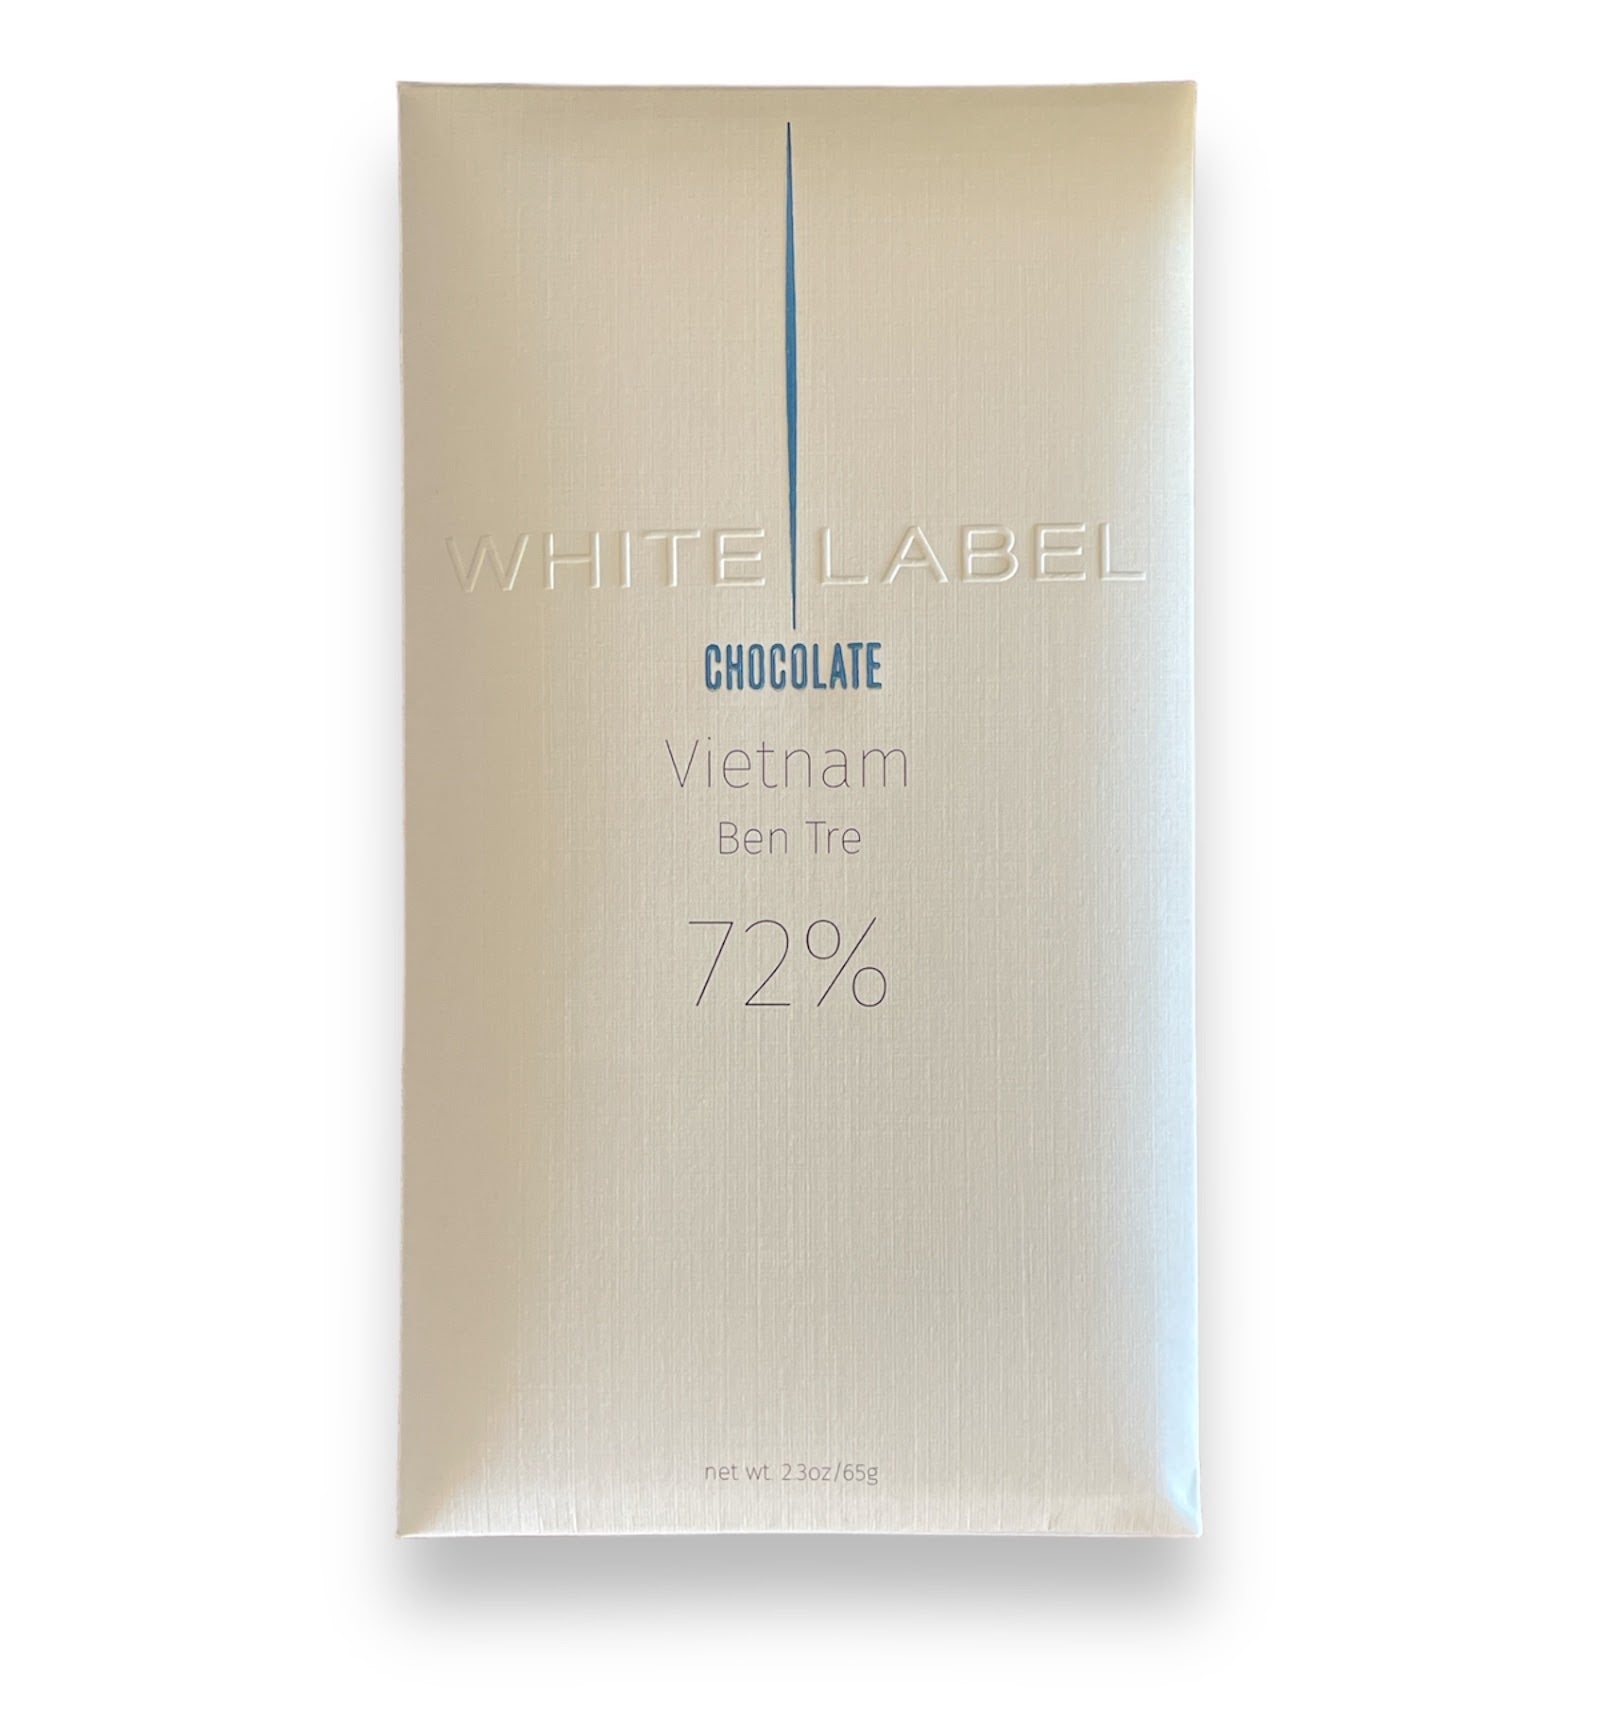 White Label Dark Chocolate - Vietnam Ben Tre 72%